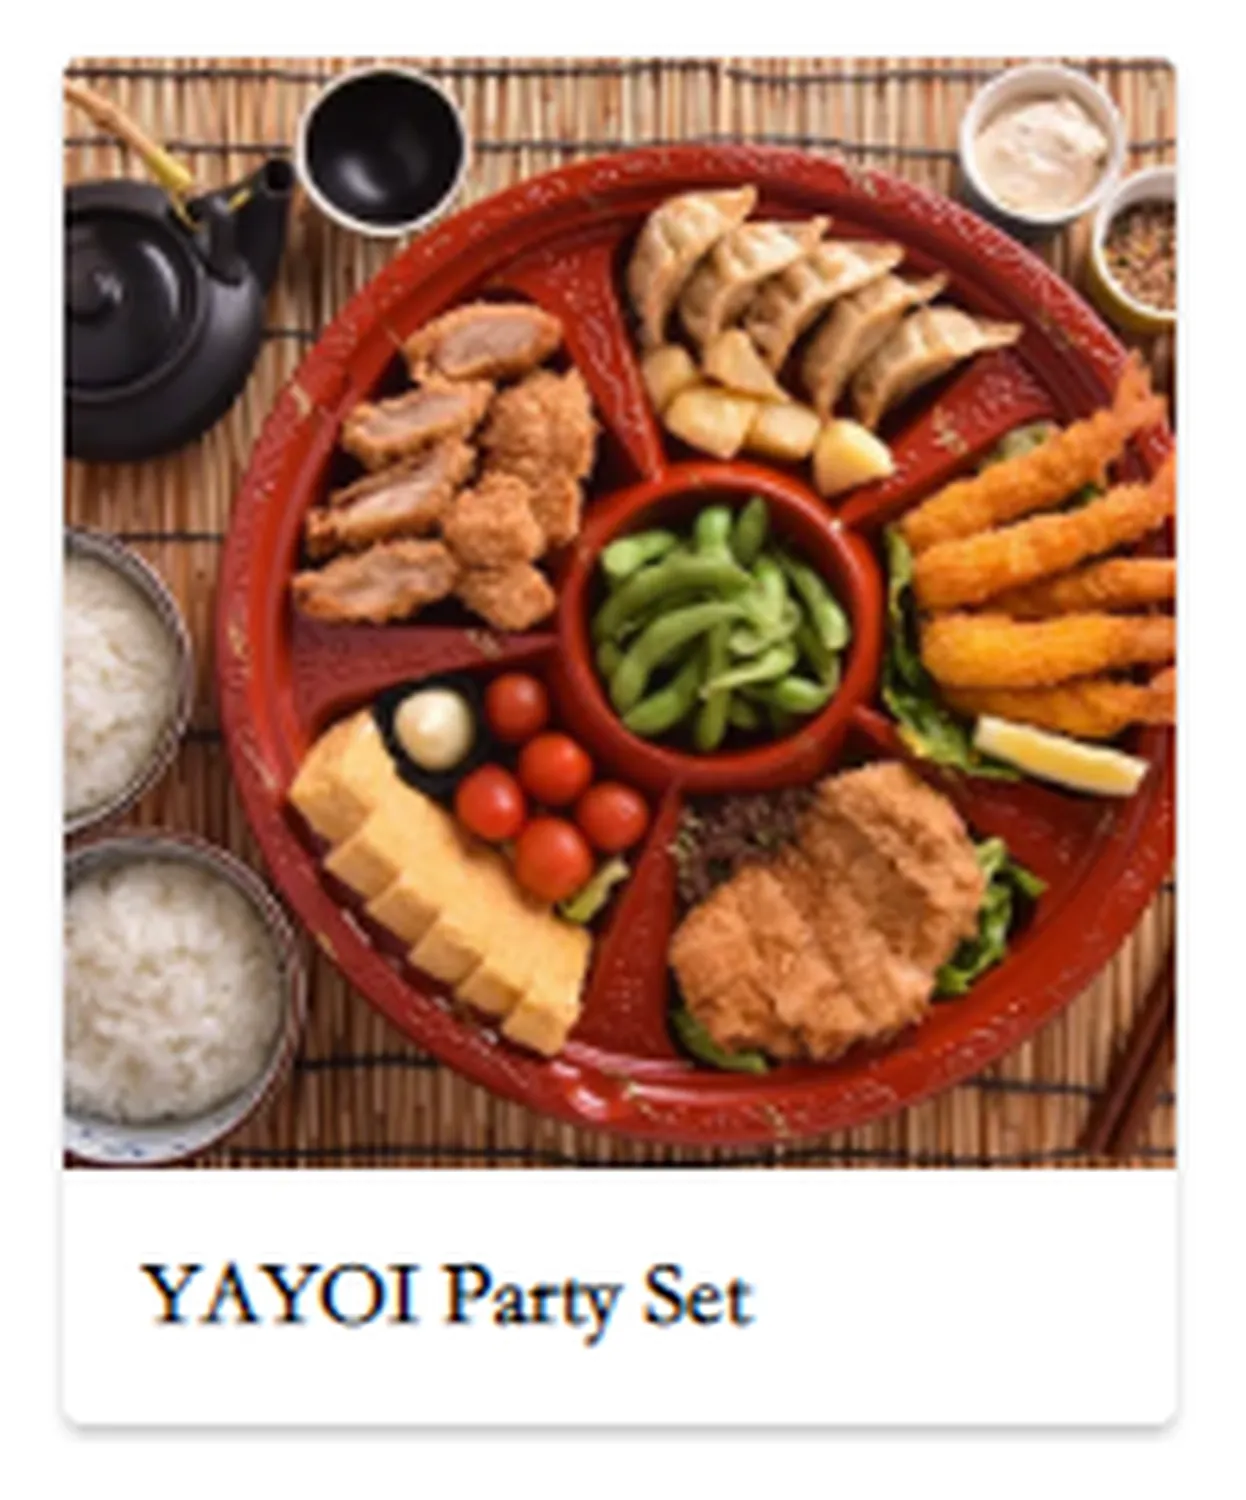 yayoi menu singapore Party Platter パーティーセット